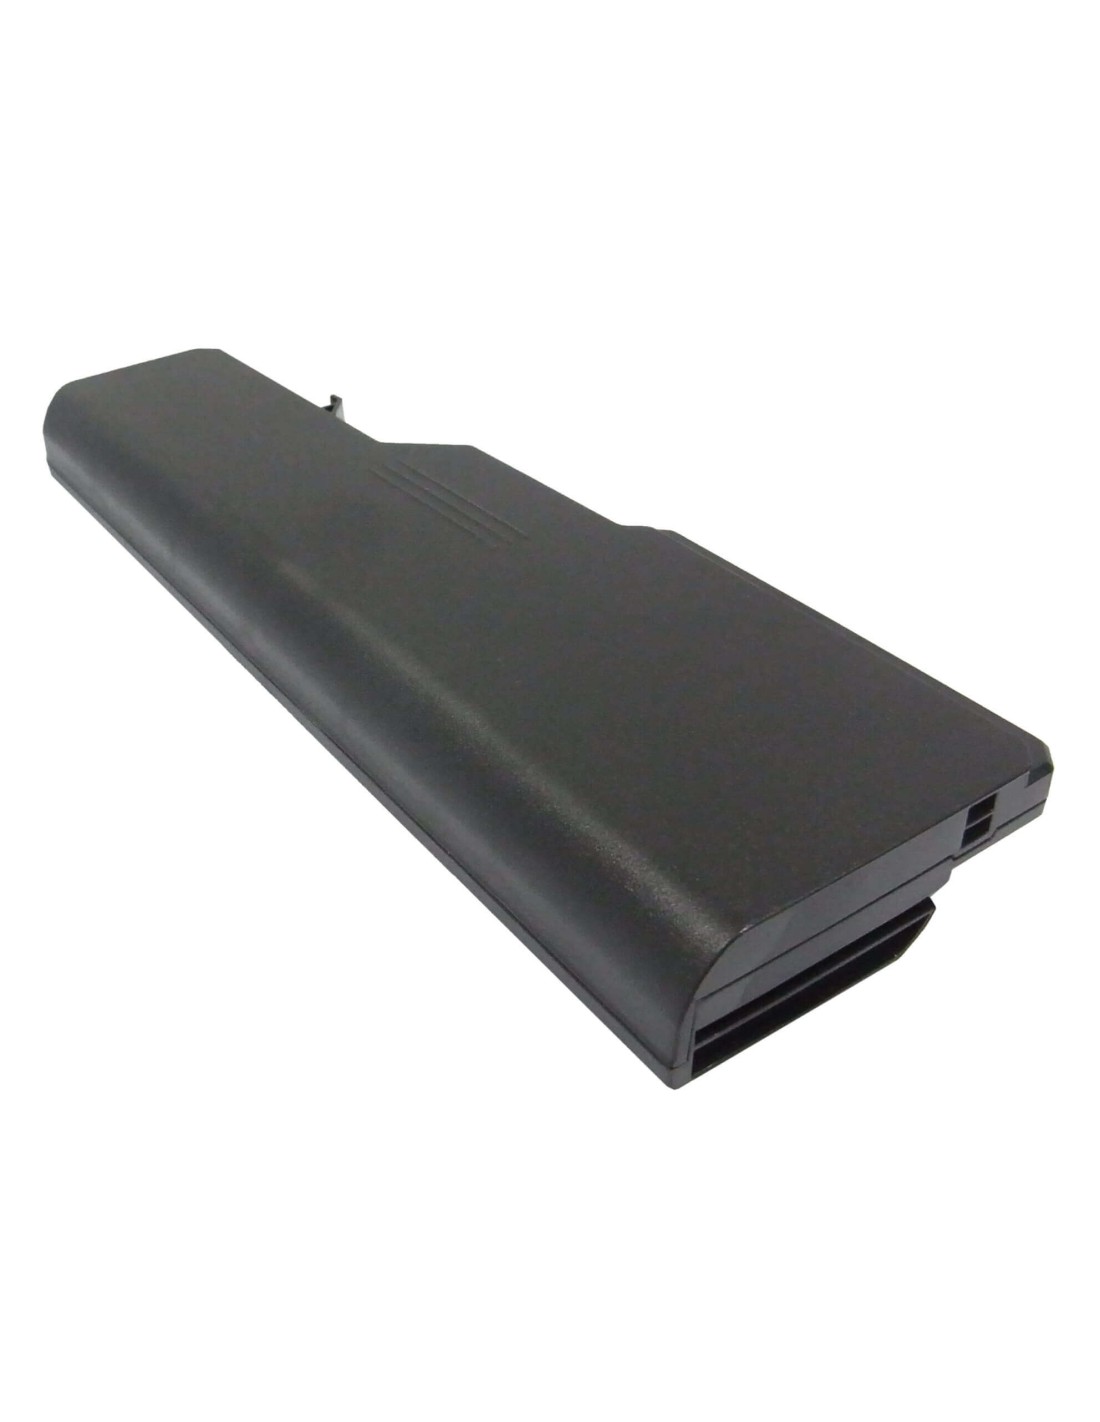 Battery for Lenovo Ideapad G460, Ideapad G460 0677, Ideapad G460 20041 11.1V, 4400mAh - 48.84Wh